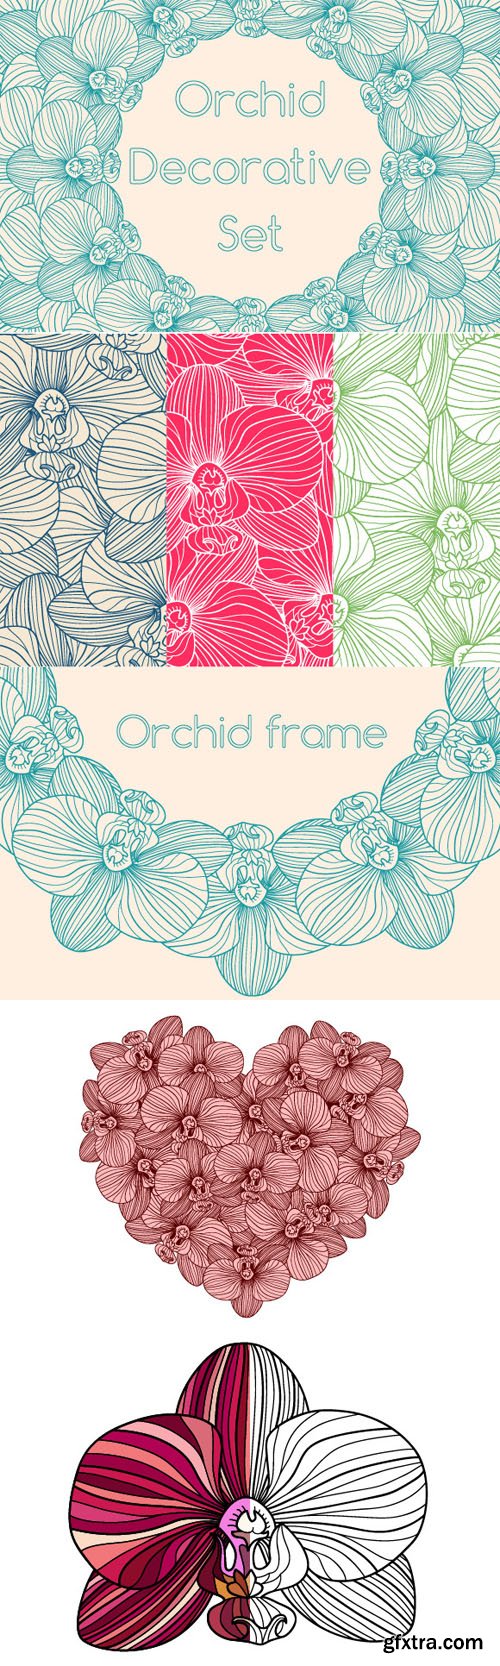 Decorative Orchid Set - CM 224931